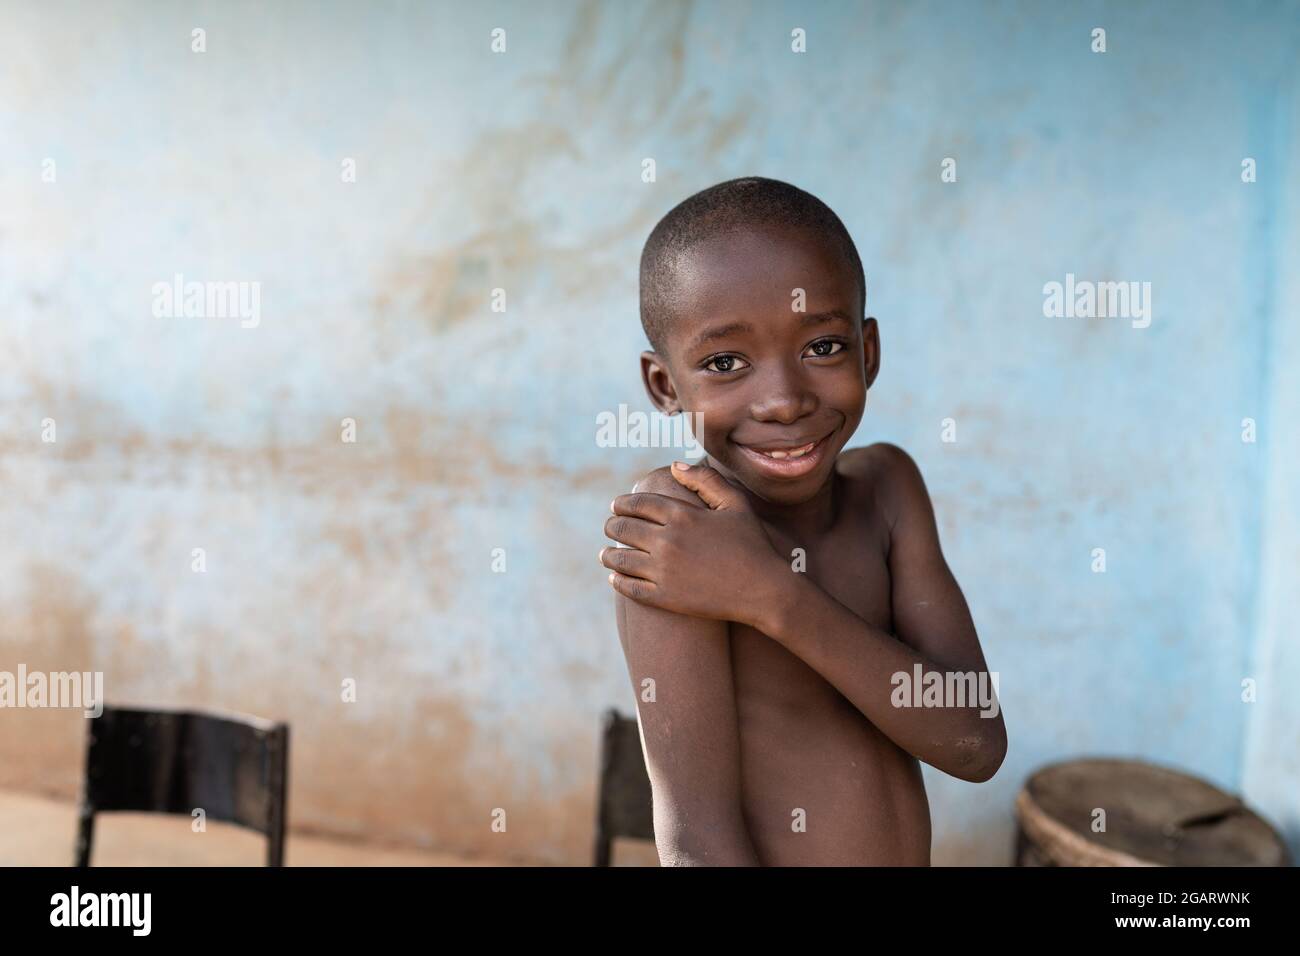 Après avoir été vacciné contre le tétanos, un petit enfant africain souriant couvre son bras supérieur où un grand plâtre a été appliqué Banque D'Images